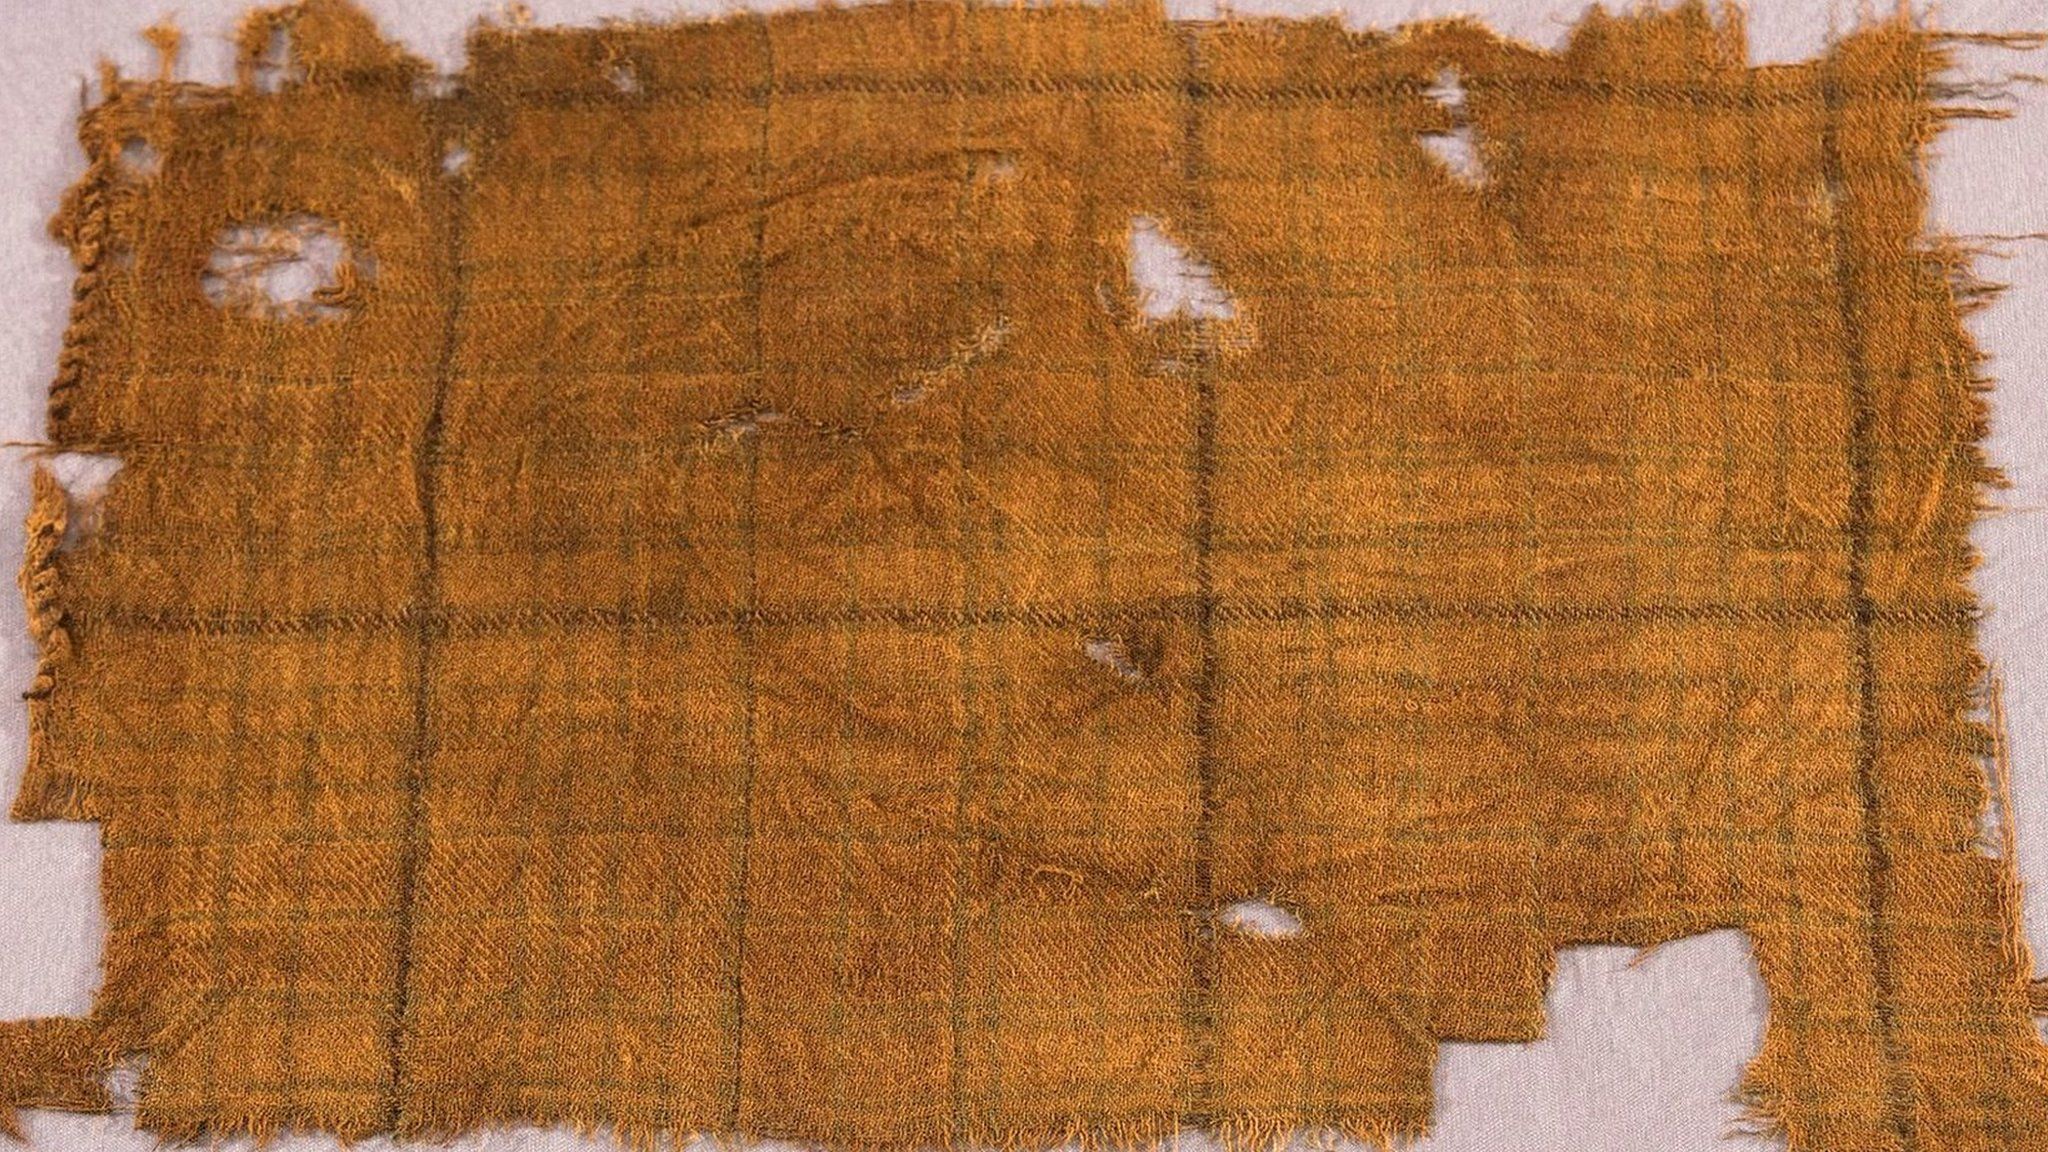 Oldest true tartan found in Scotland